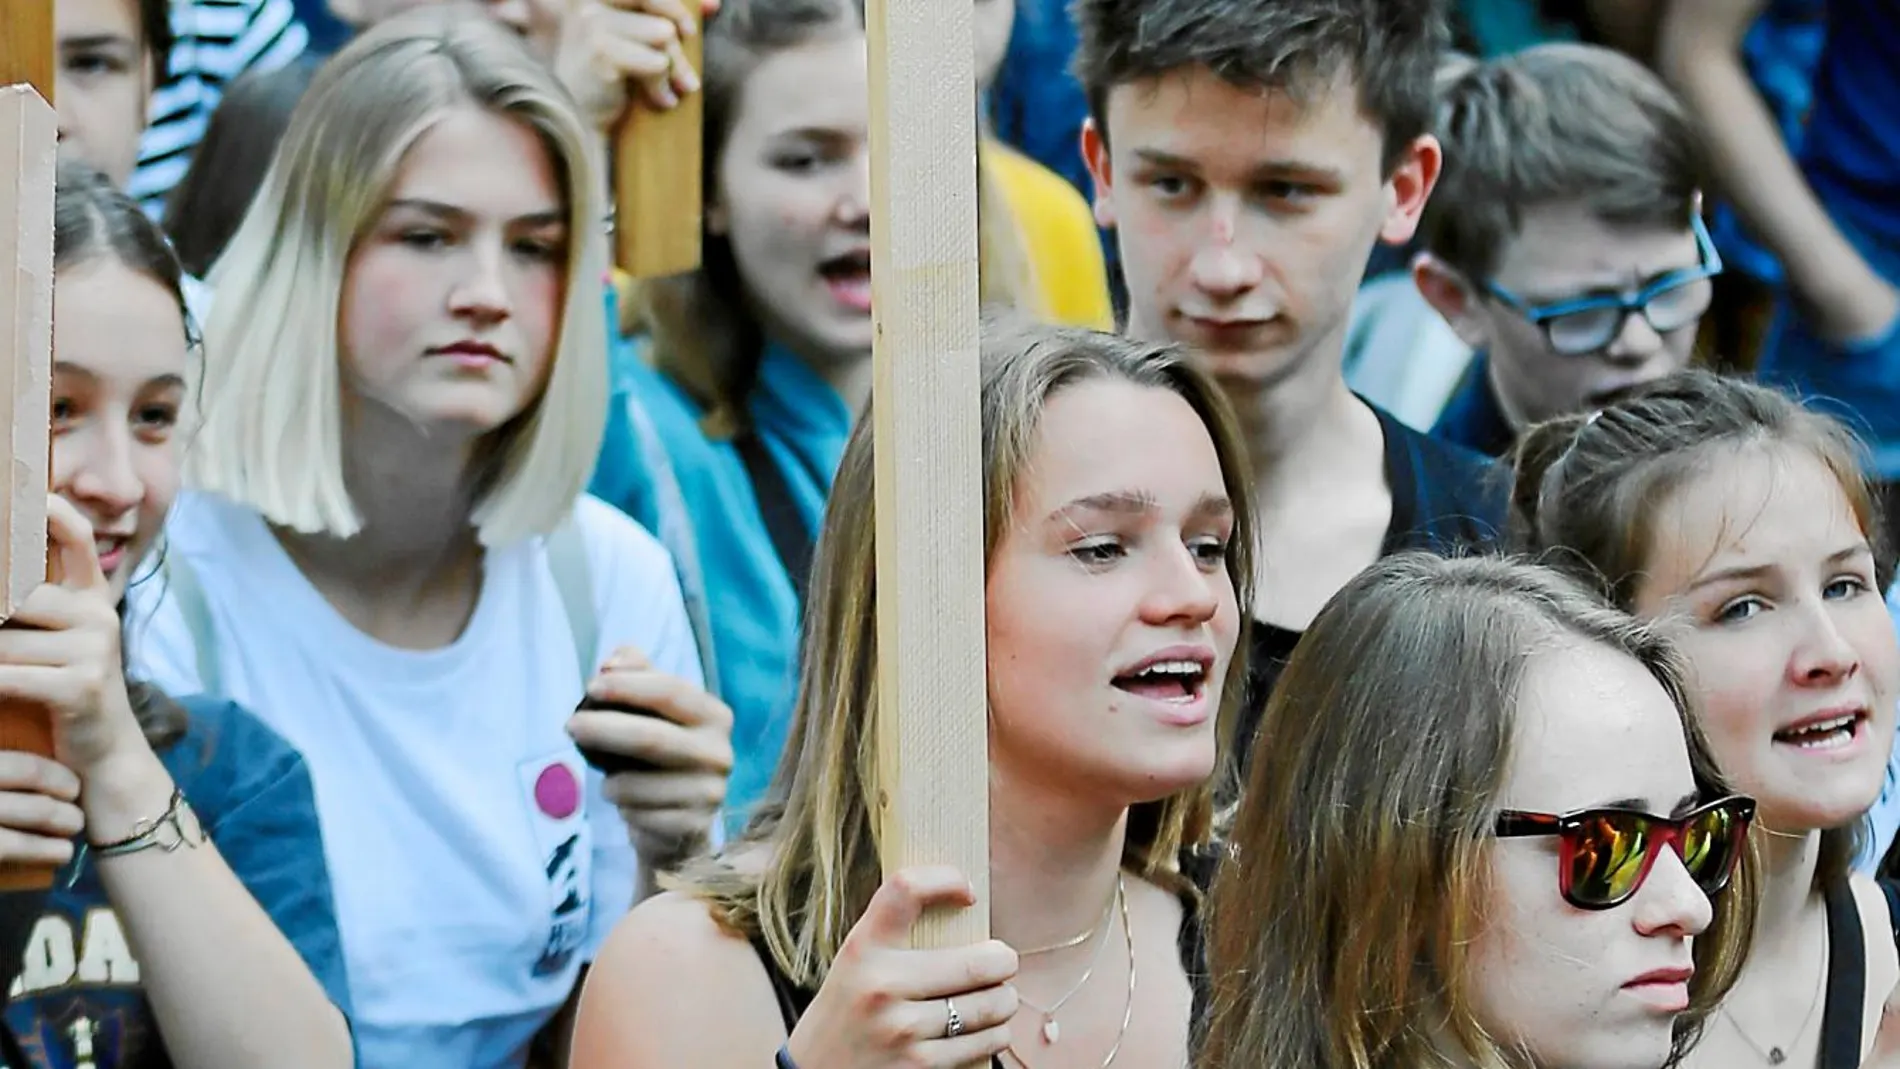 Jóvenes estudiantes participan en una manifestación contra el cambio climático en la ciudad alemana de Colonia / Ap